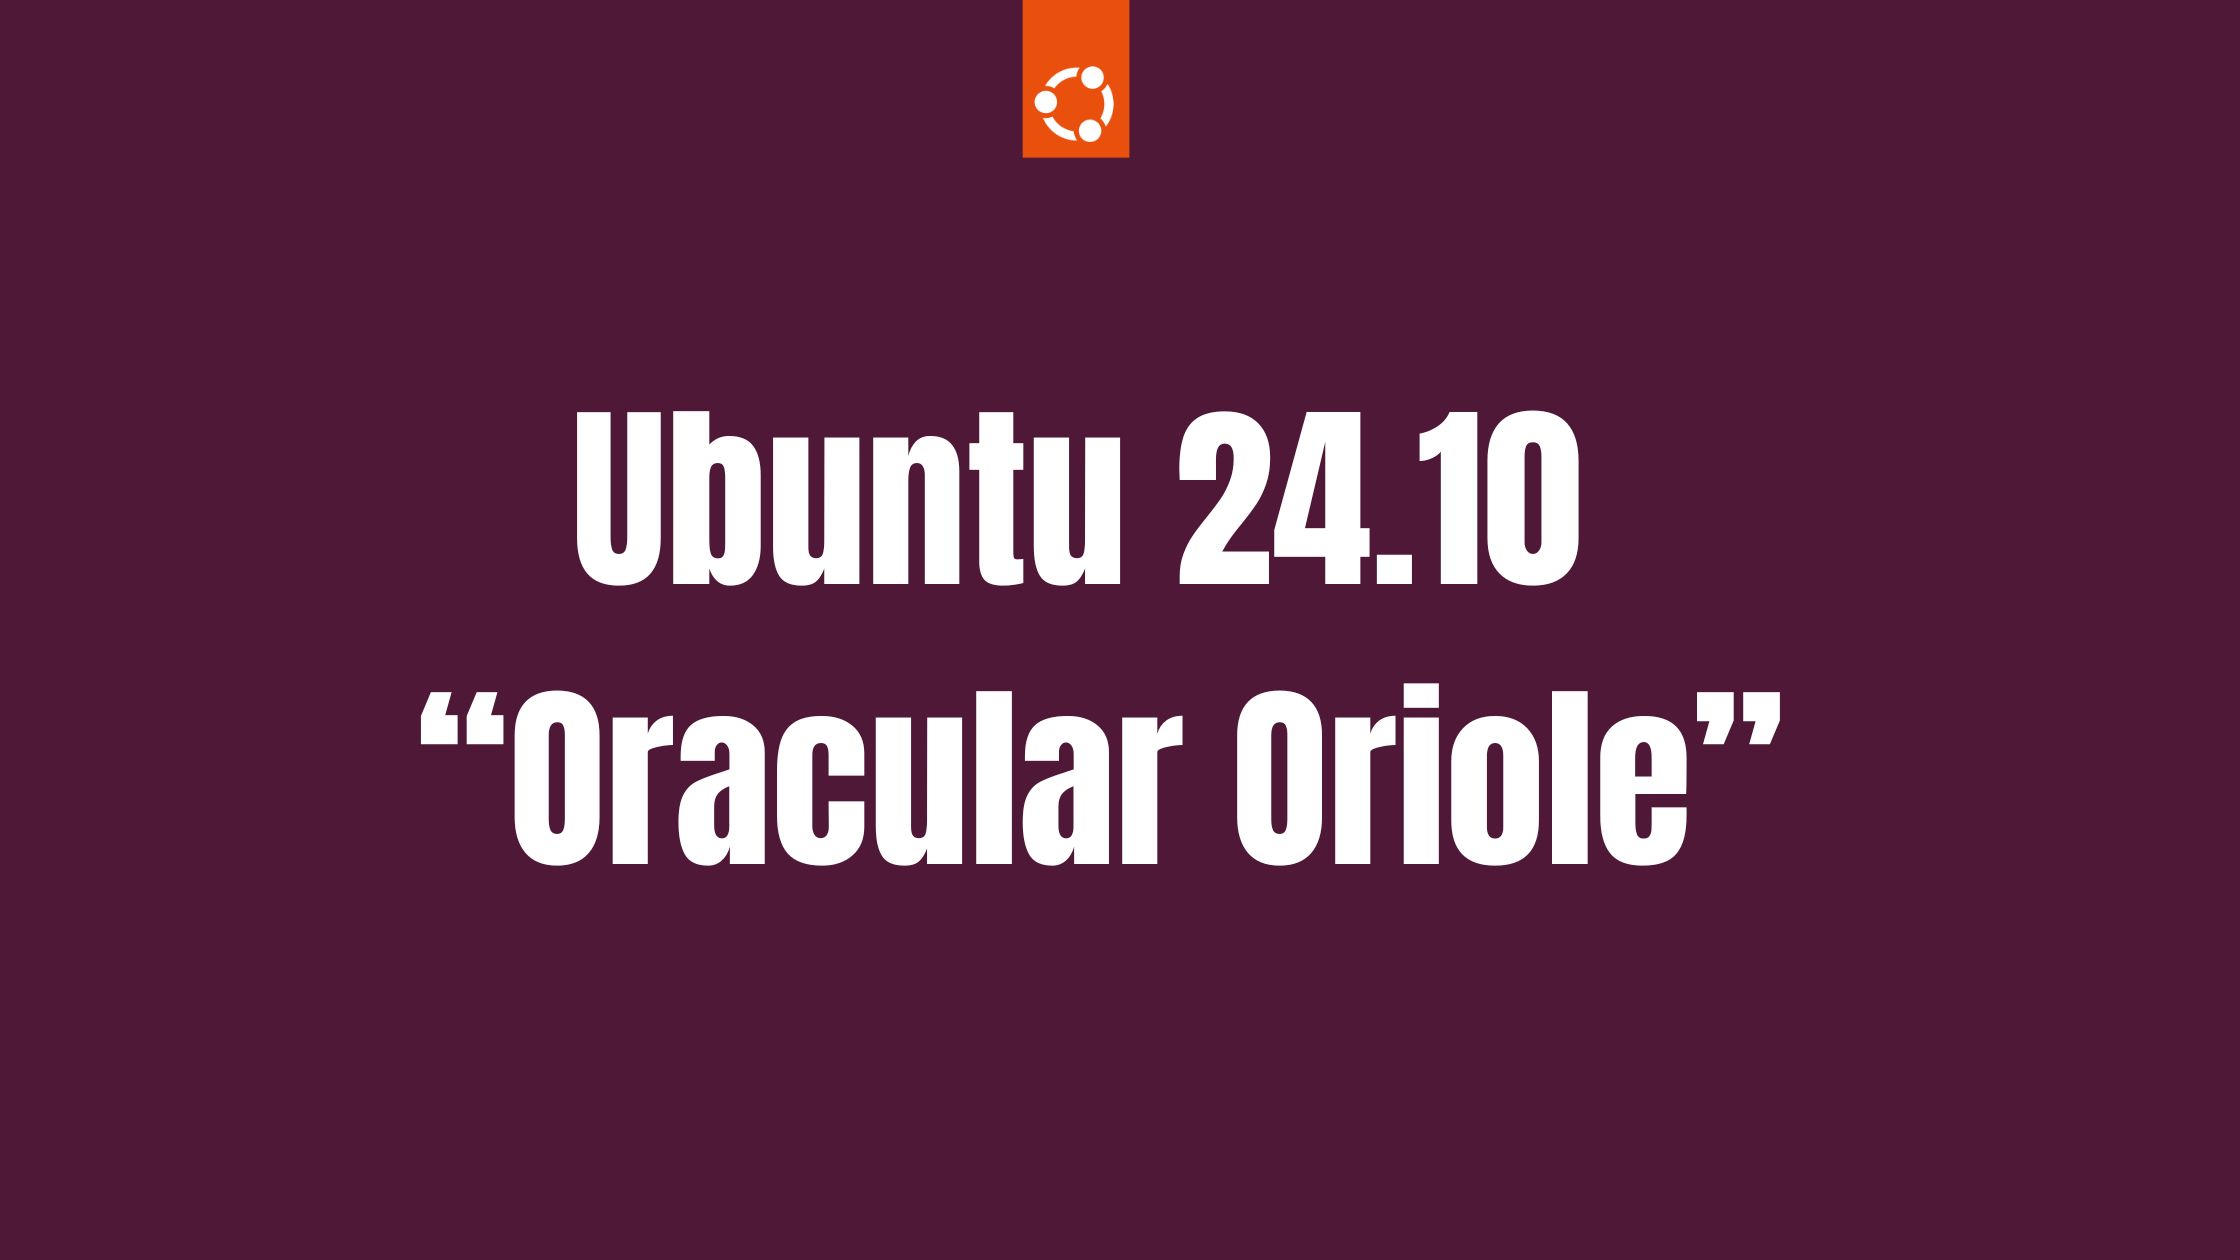 Ubuntu 24.10 “Oracular Oriole” Release Schedule